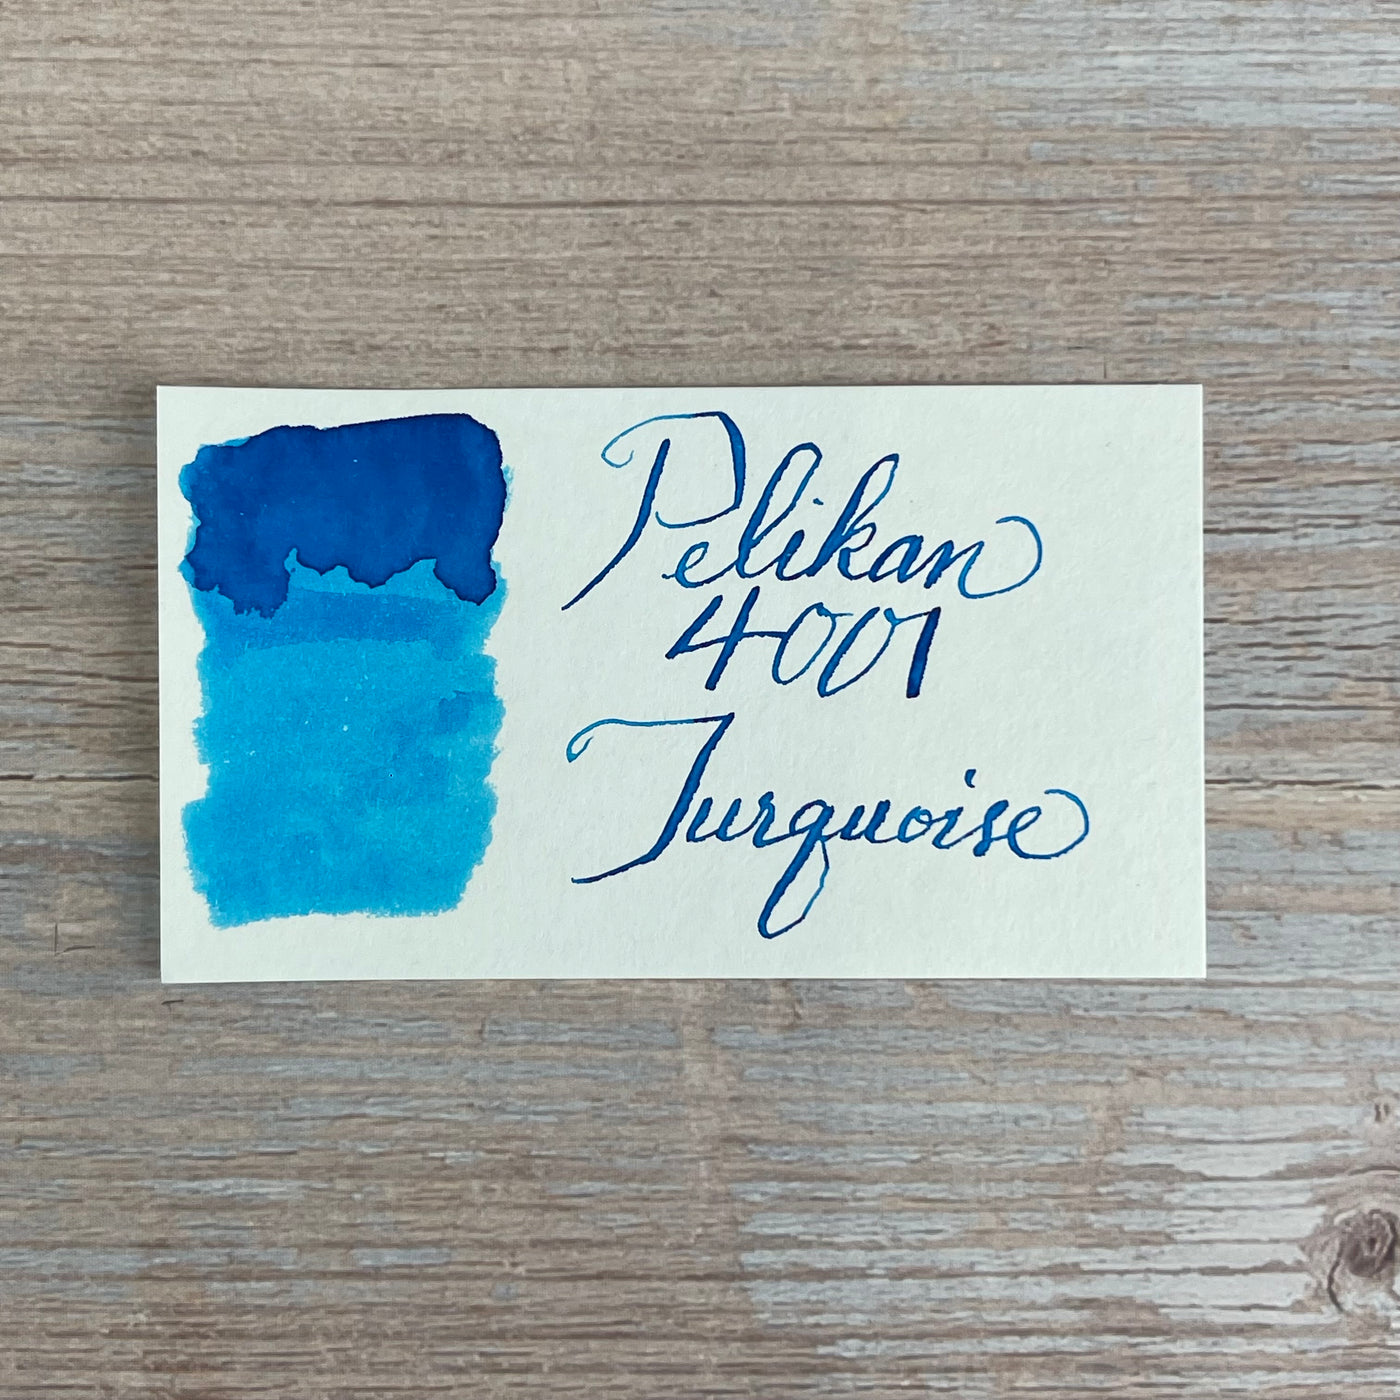 Pelikan 4001 Turquoise - 30ml Bottled Ink